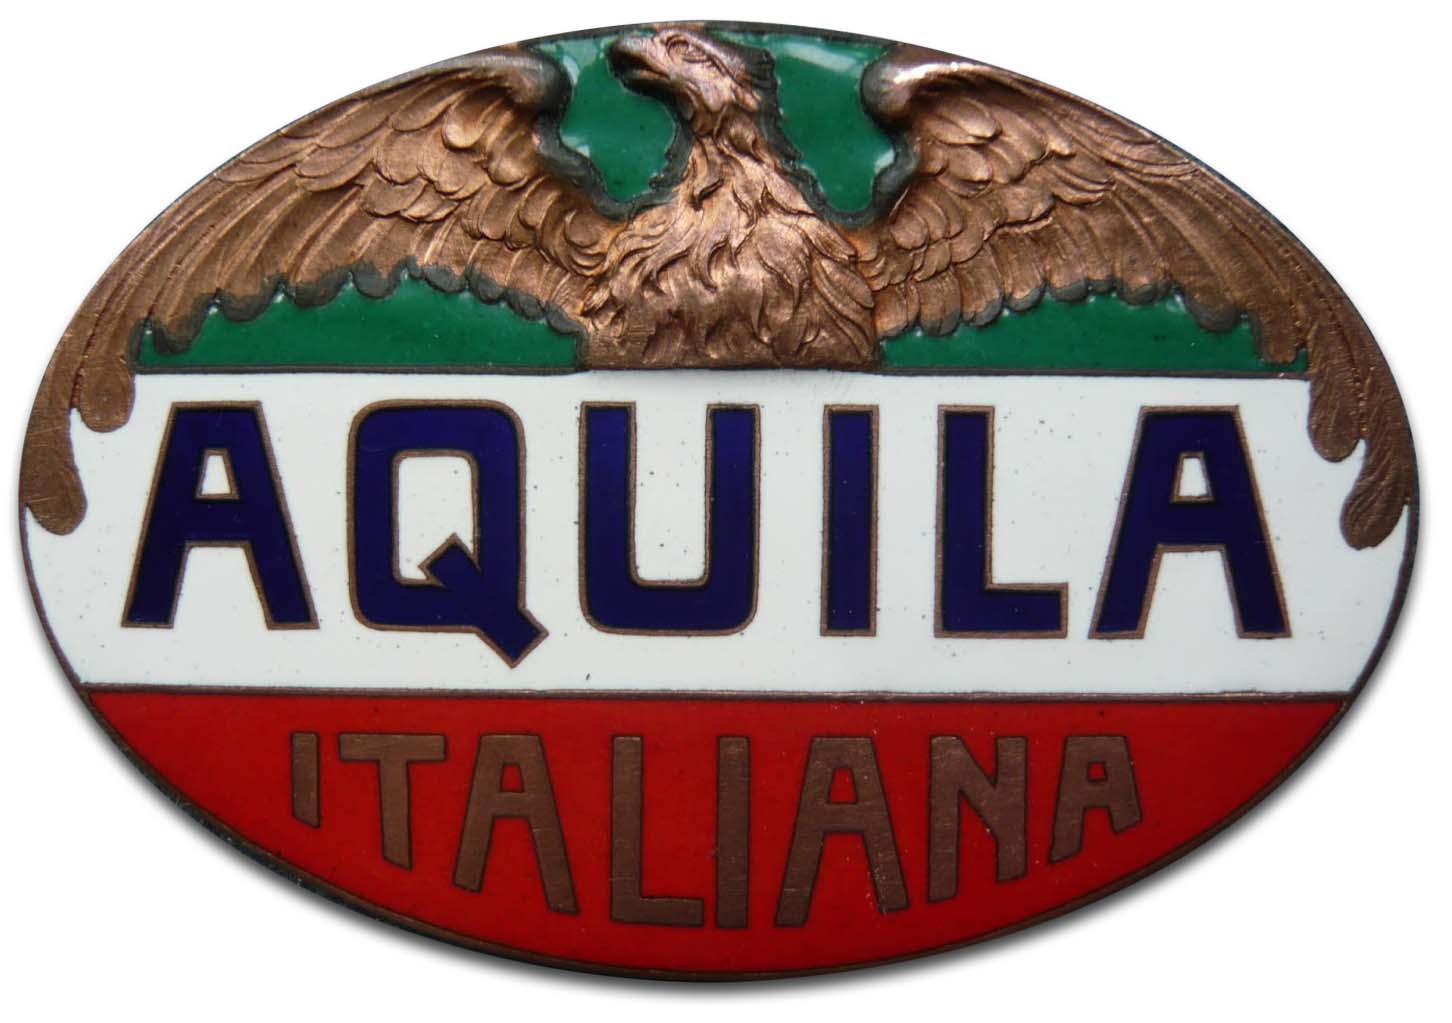 Society Anonima Aquila Italiana (1913 grill emblem)(1913)